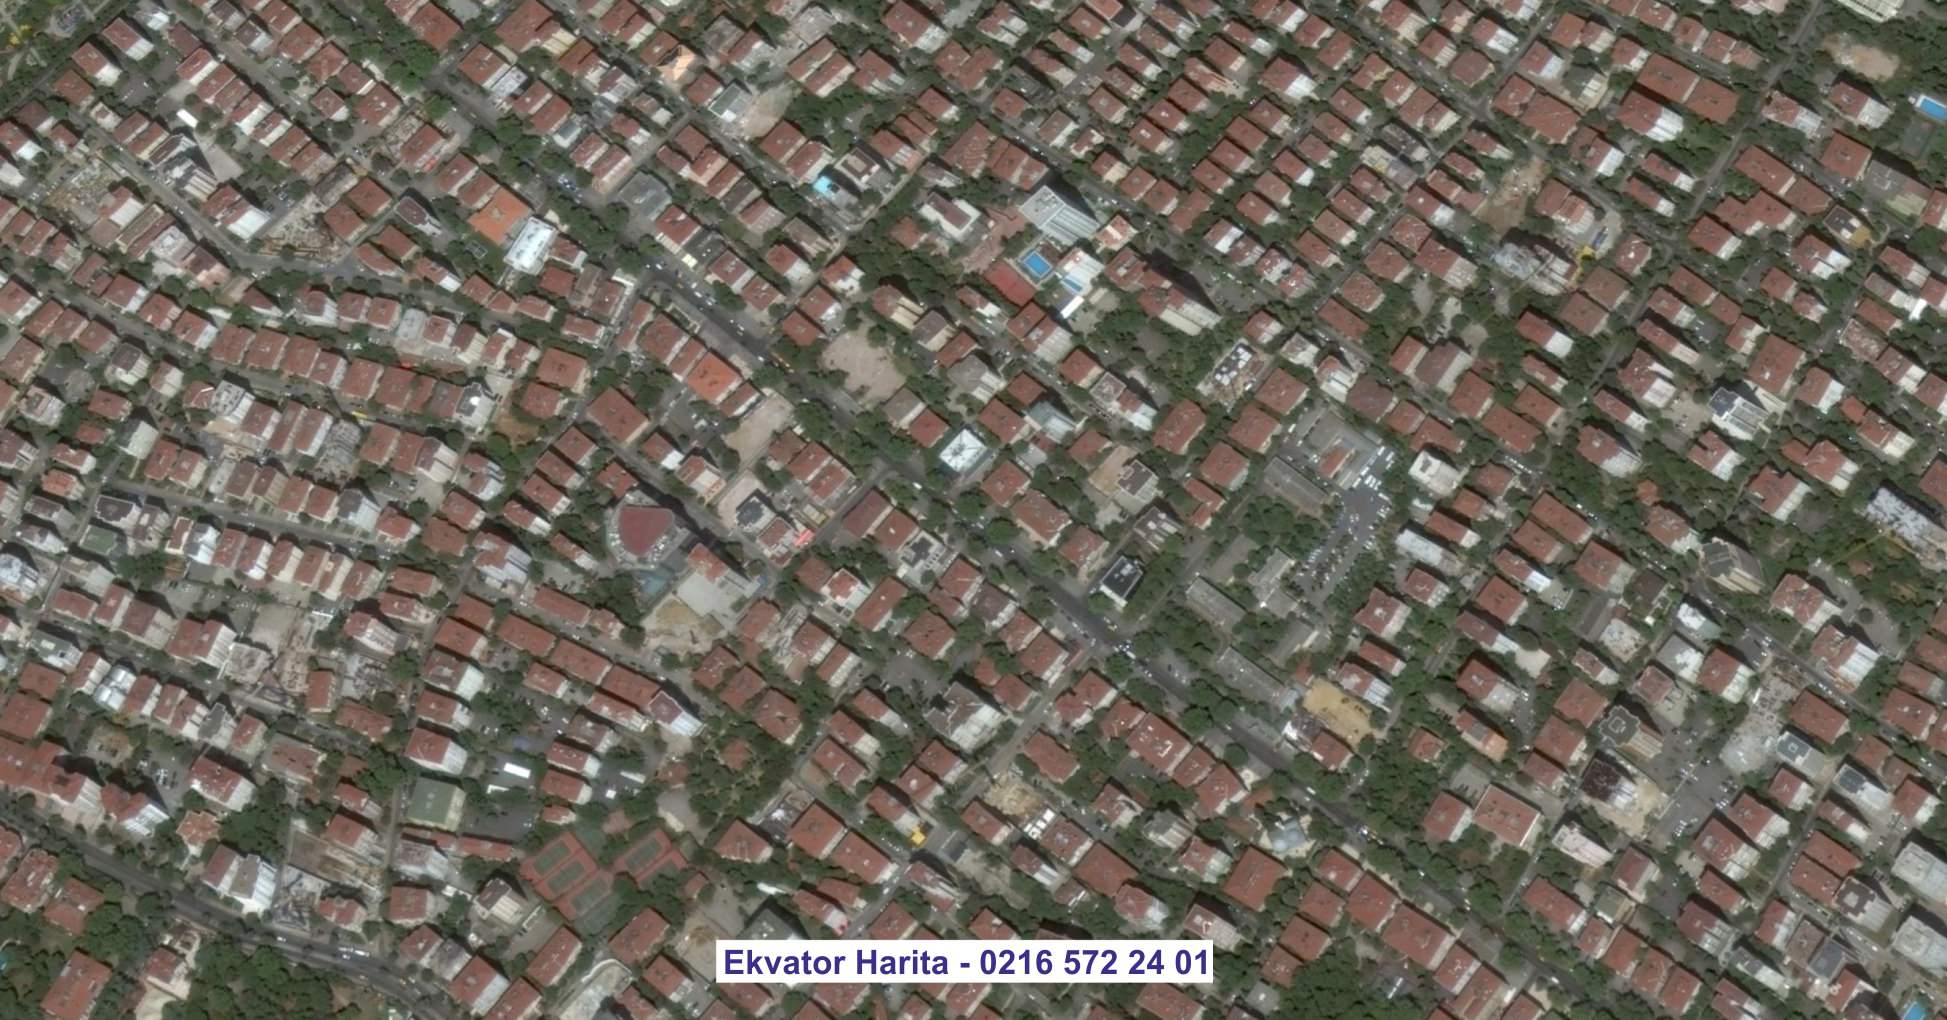 Antalya Uydu Görüntüsü Örnek Fotoğrafı